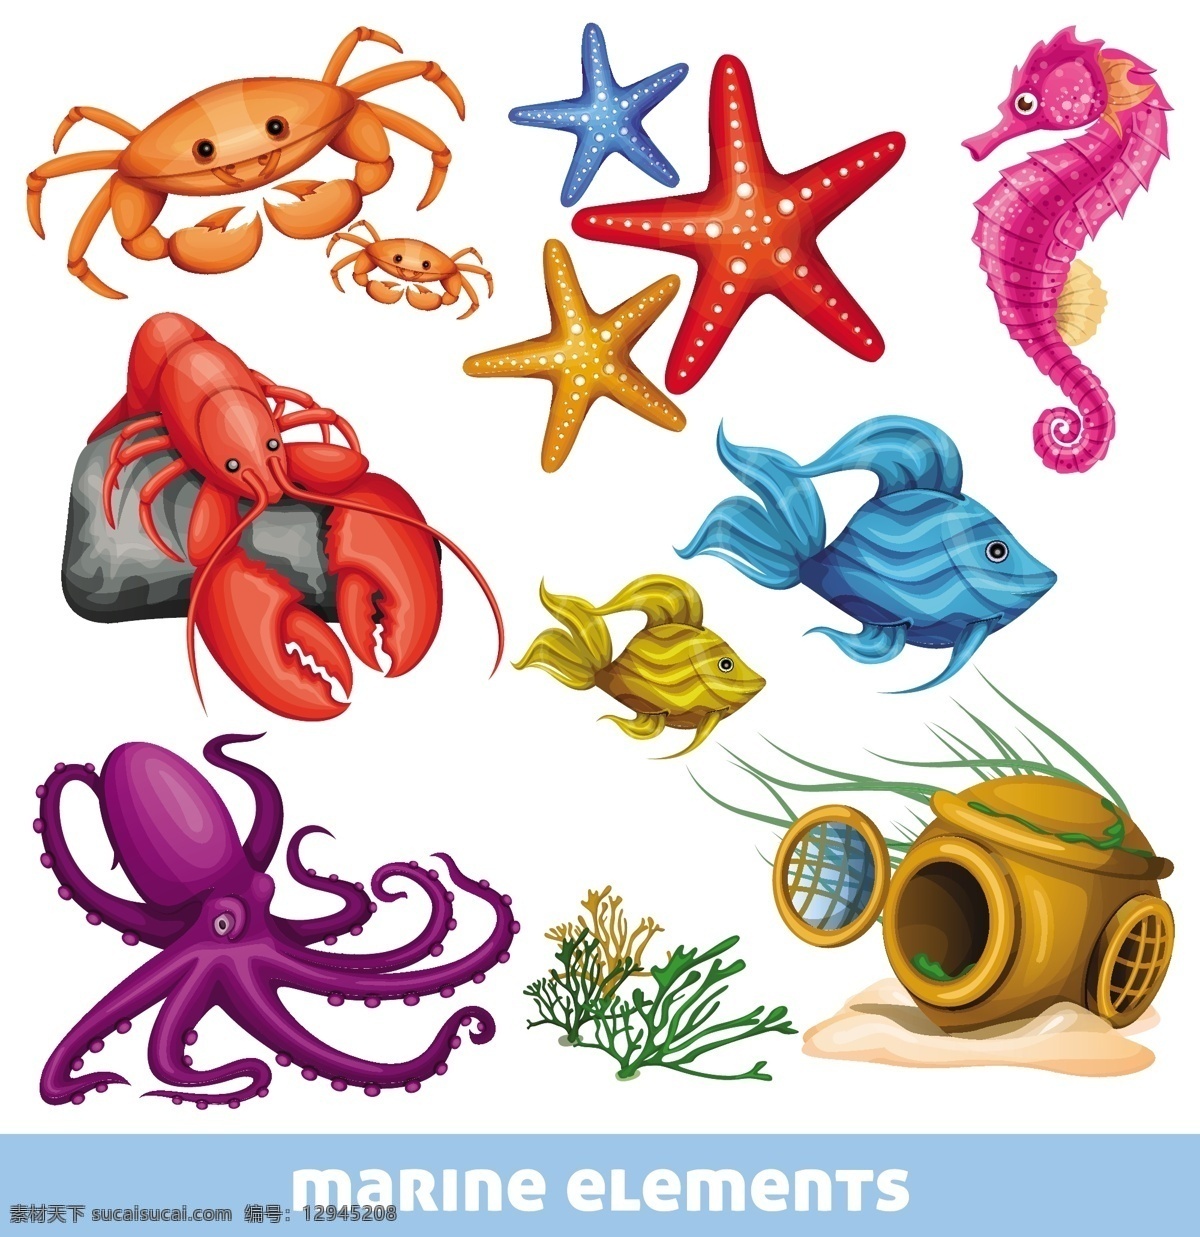 卡通海洋生物 卡通 海洋 生物 海星 螃蟹 龙虾 乌贼 手绘 矢量 海洋生物 生物世界